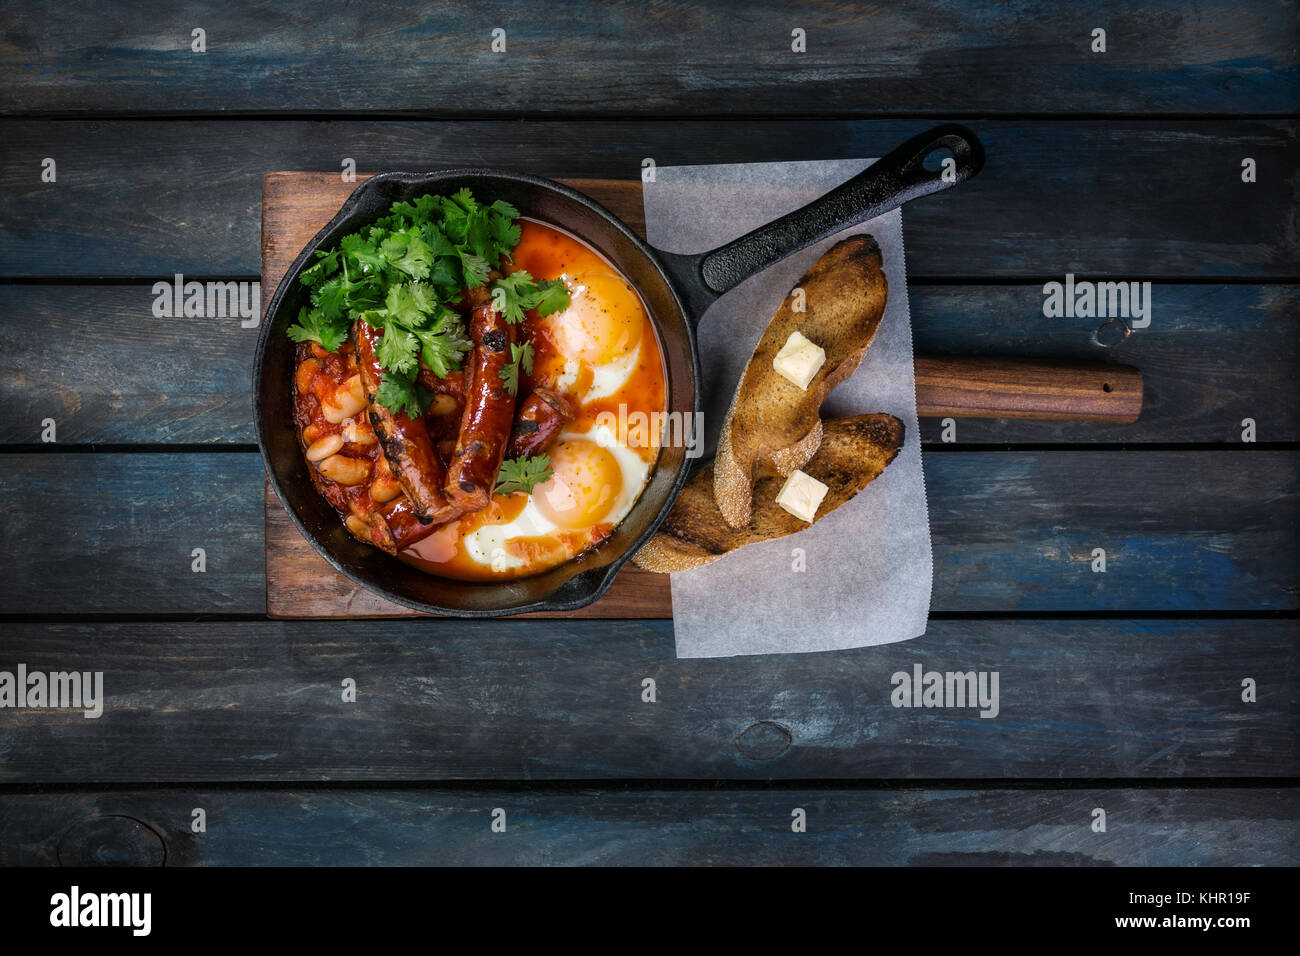 Frühstück in einer heißen Pfanne mit Spiegelei, Würstchen, Bohnen, Grün und Toasts. Auf einem farbigen Hintergrund Holz. nach oben anzeigen. Stockfoto